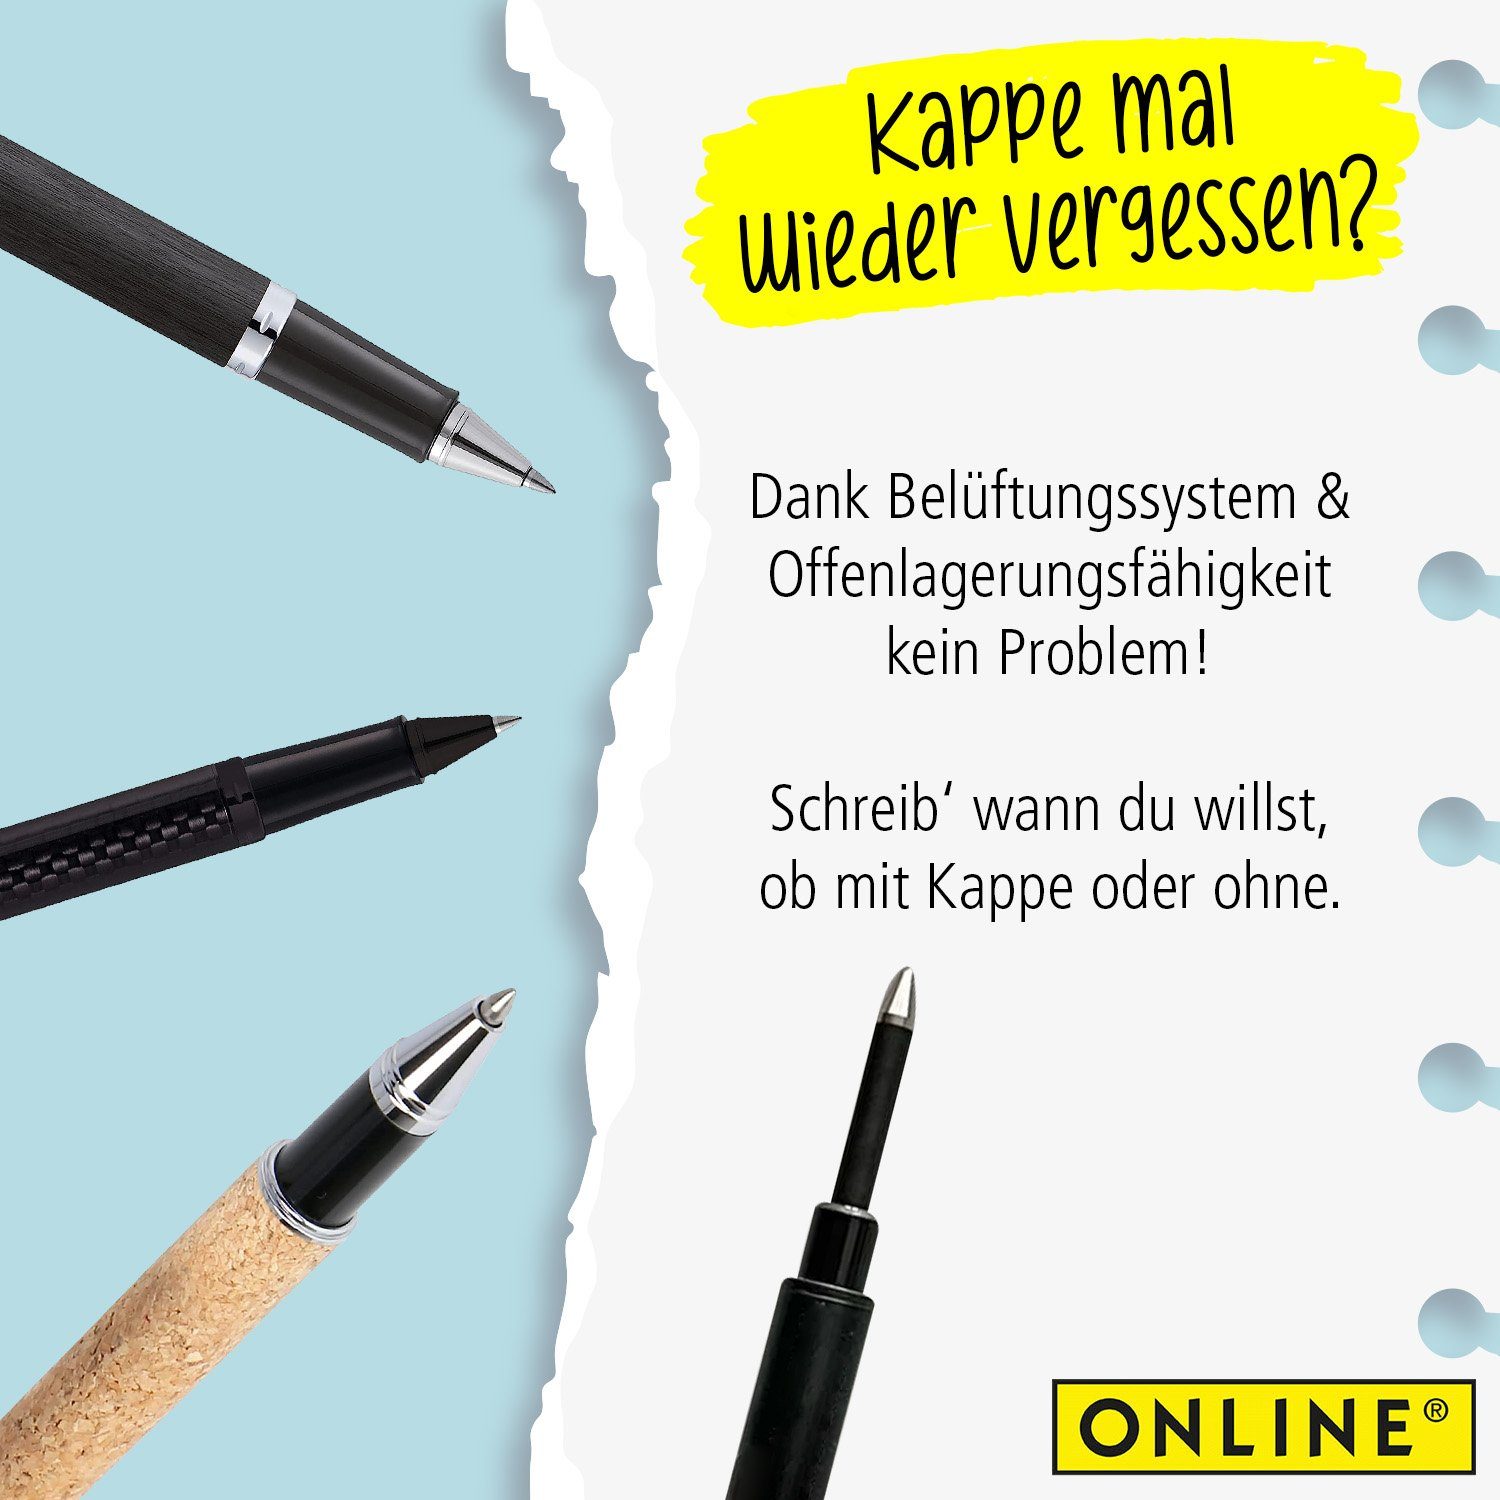 Online Mine, kompatibel Tintenrollern mit verschiedener schwarz Marken Tintenroller Rollerball Pen